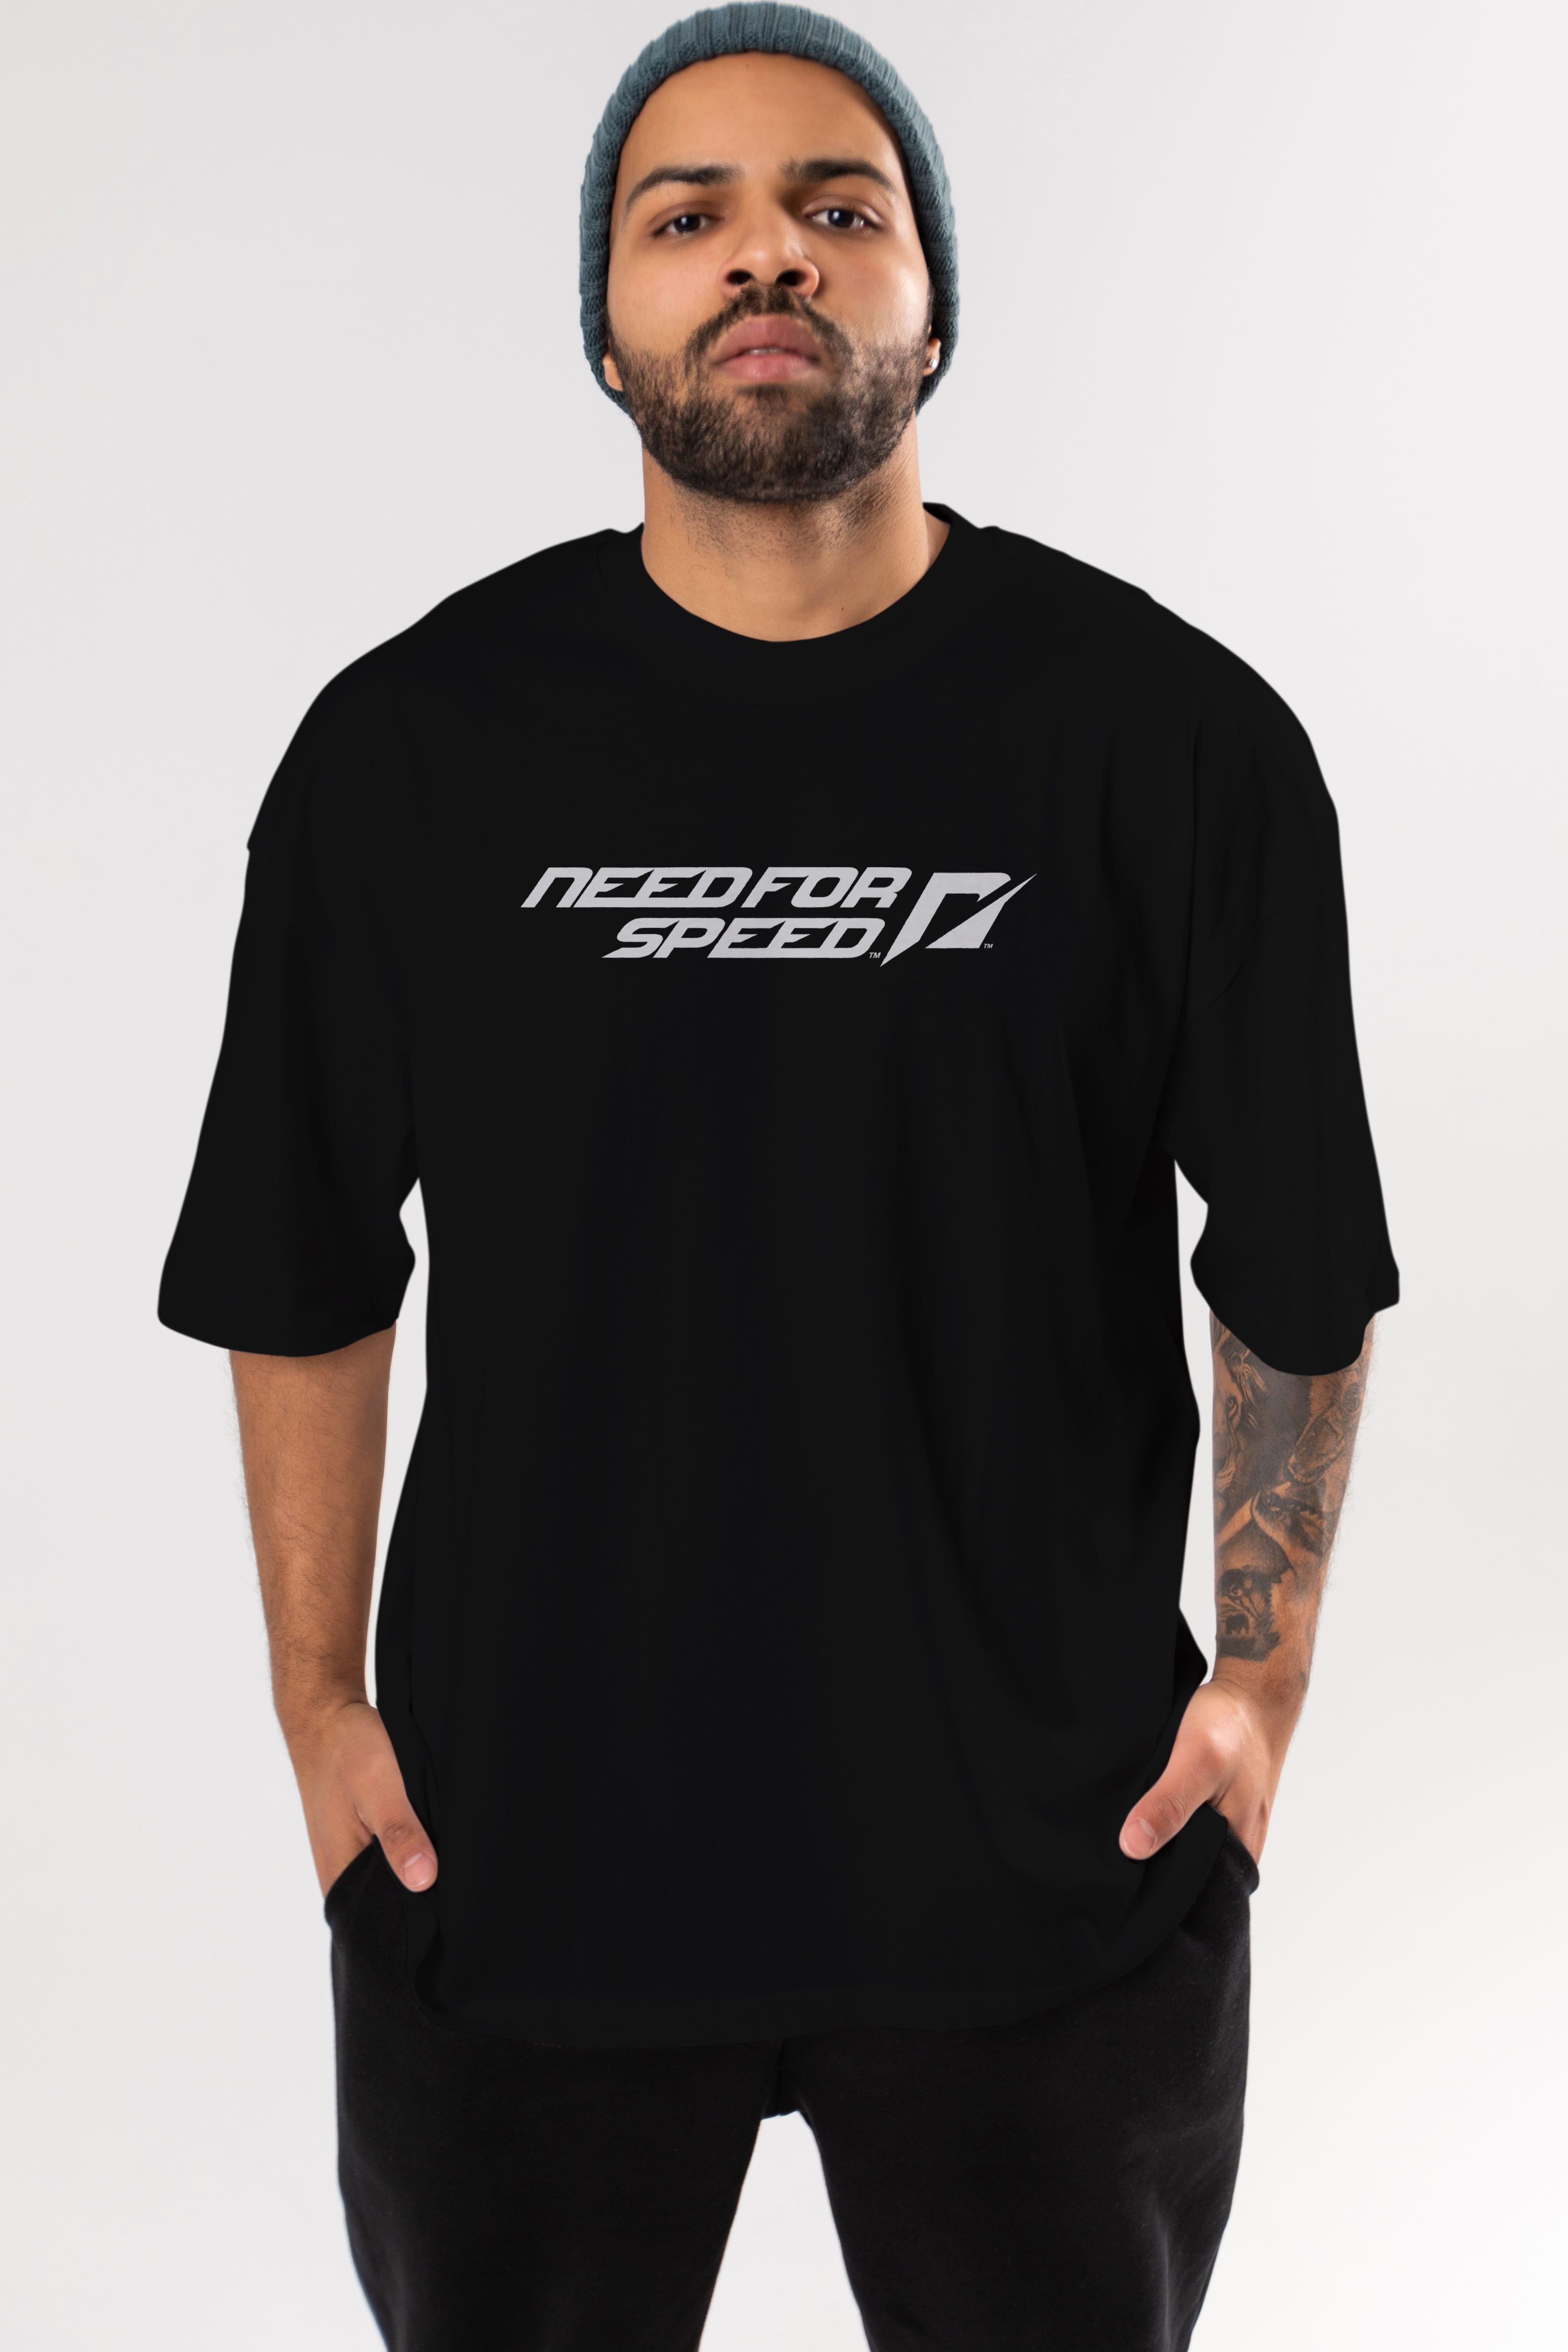 Need For Speed Ön Baskılı Oversize t-shirt %100 pamuk Erkek Kadın Unisex